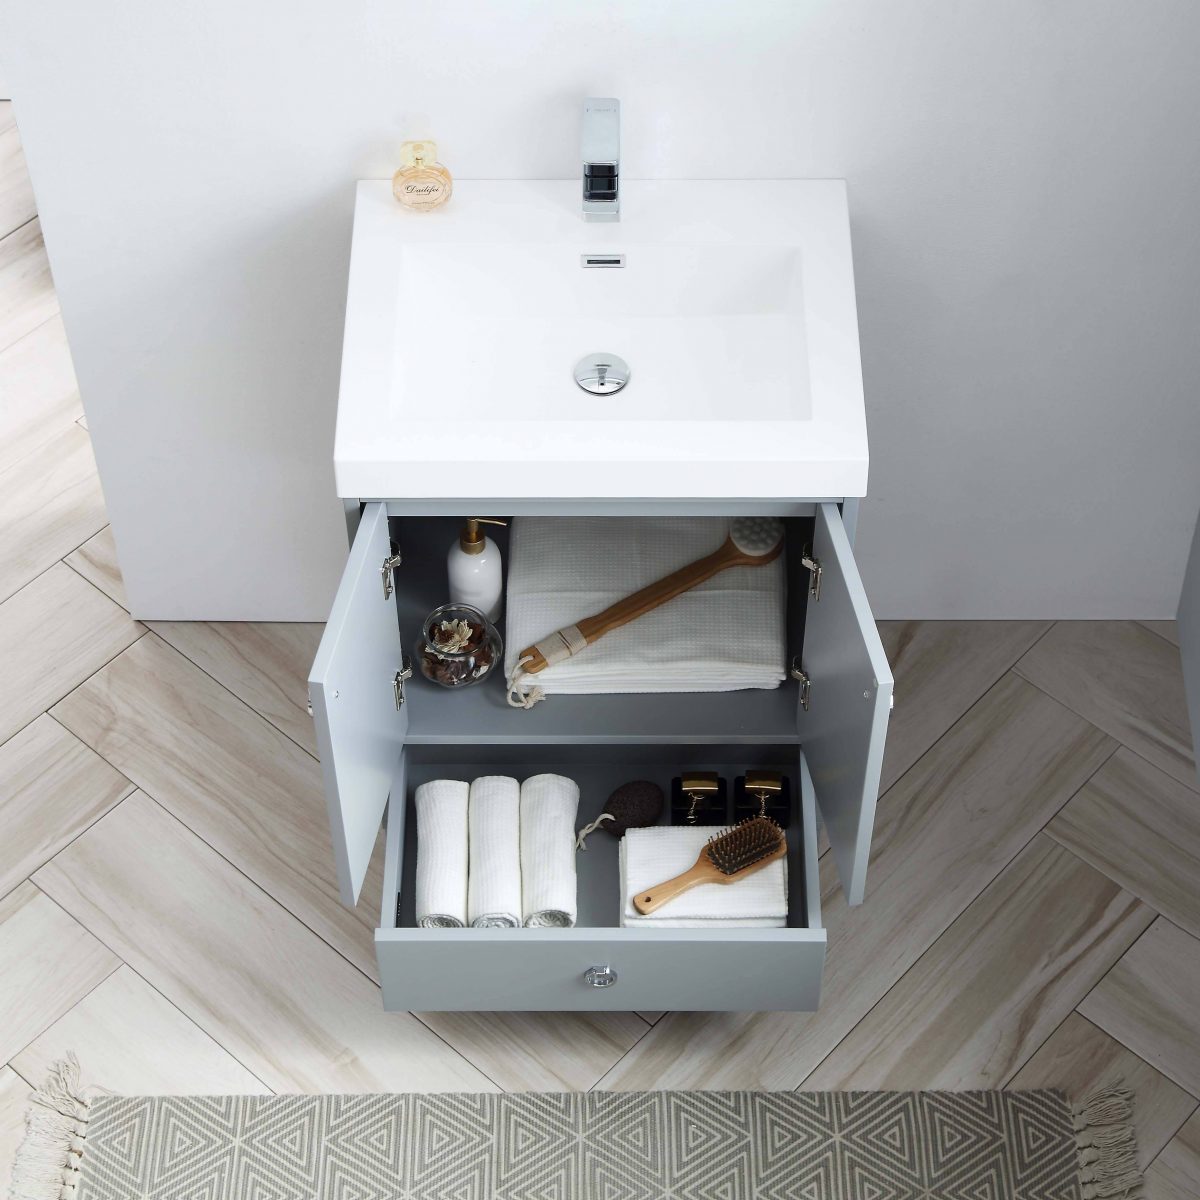 Lyon 24" Bathroom Vanity  #size_24"  #color_metal grey 